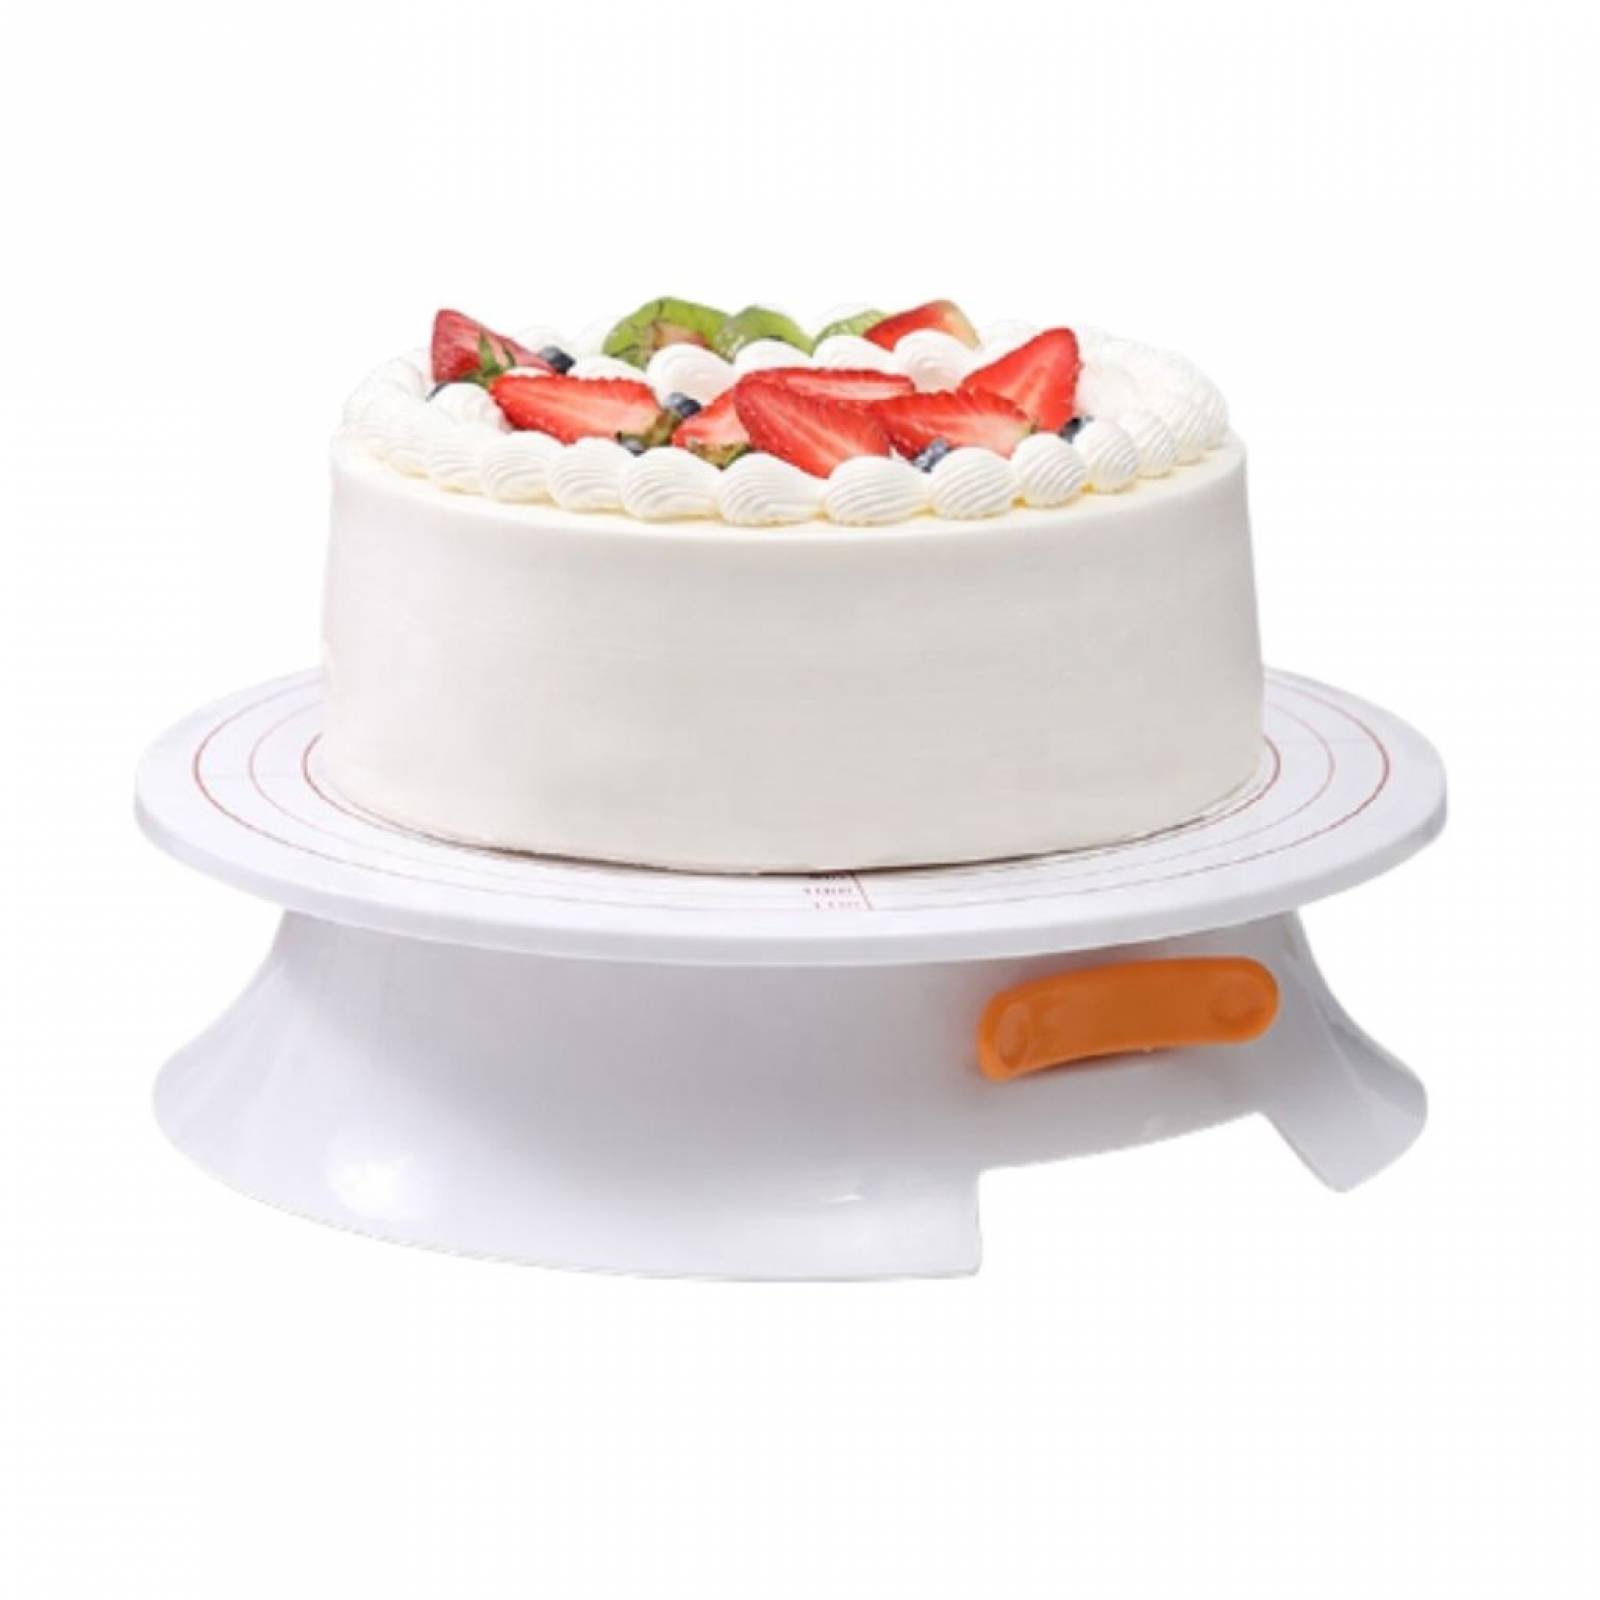  69 kits de decoración de pasteles con plato giratorio